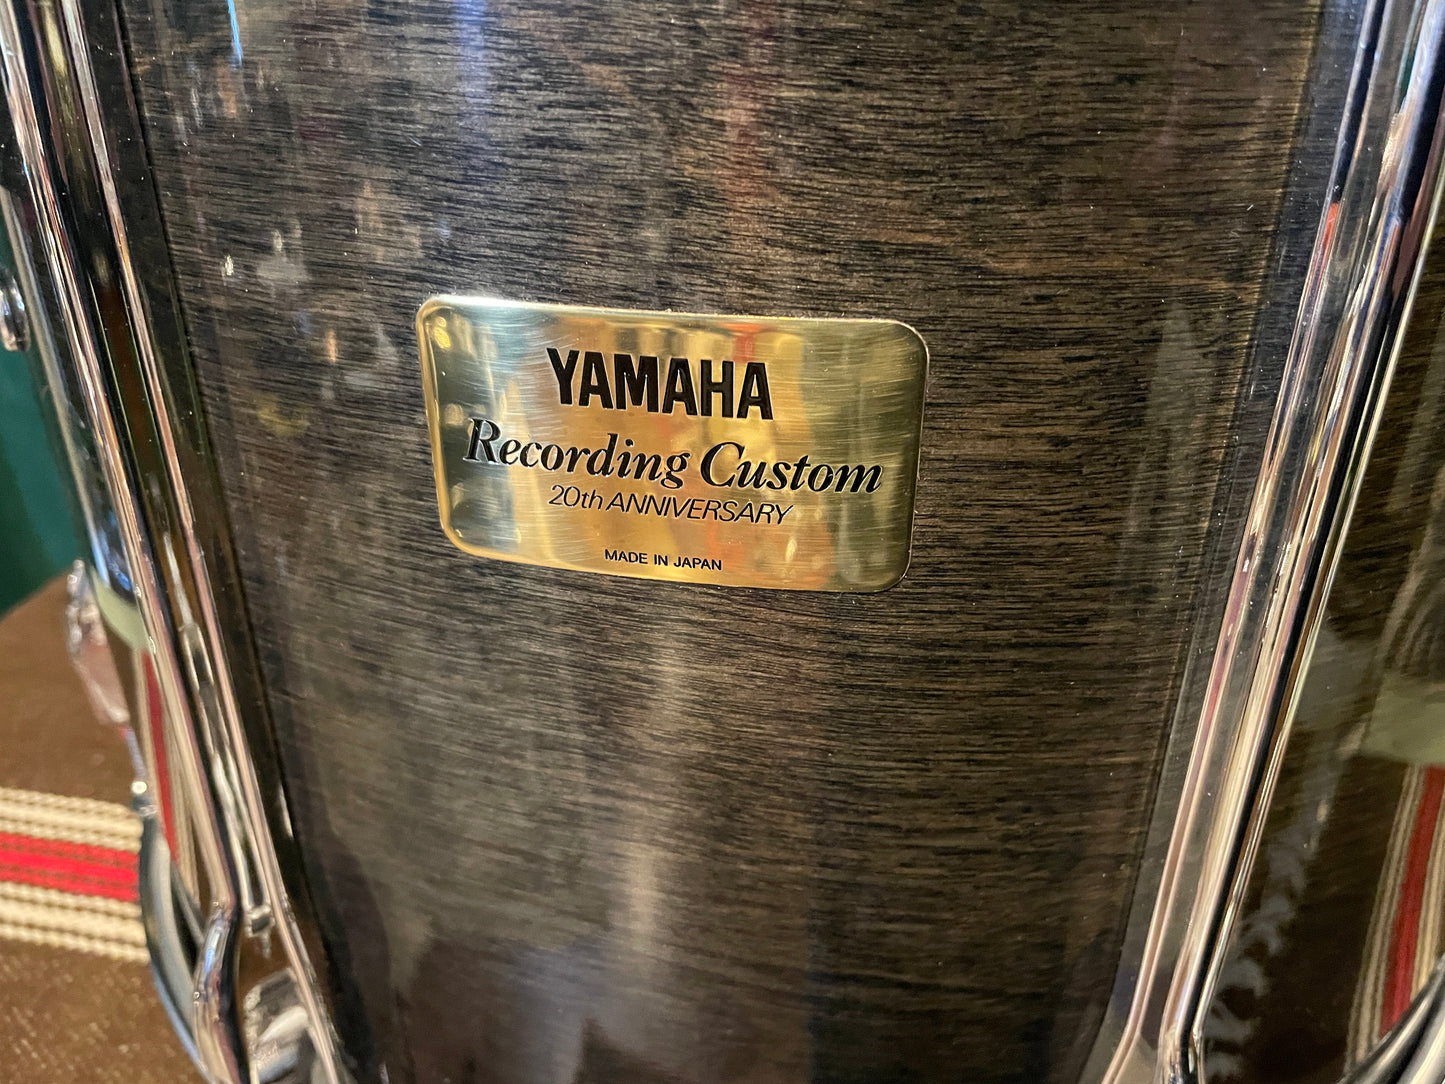 1996 Yamaha 20th Anniversary Recording Custom 14x16 Floor Tom Drum Black Sunburst TT916YA 16x14